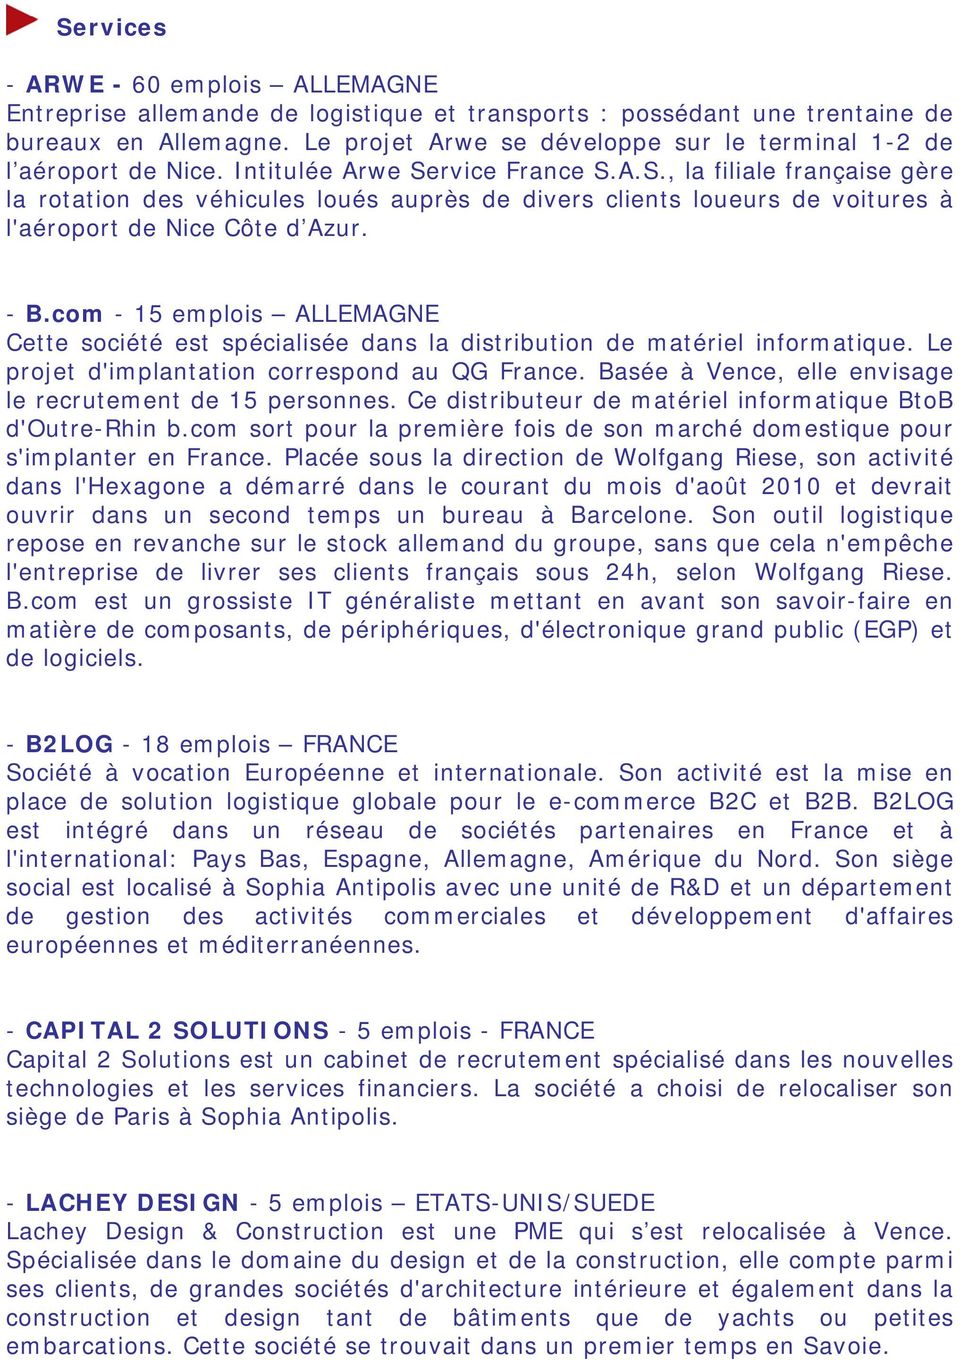 rvice France S.A.S., la filiale française gère la rotation des véhicules loués auprès de divers clients loueurs de voitures à l'aéroport de Nice Côte d Azur. - B.